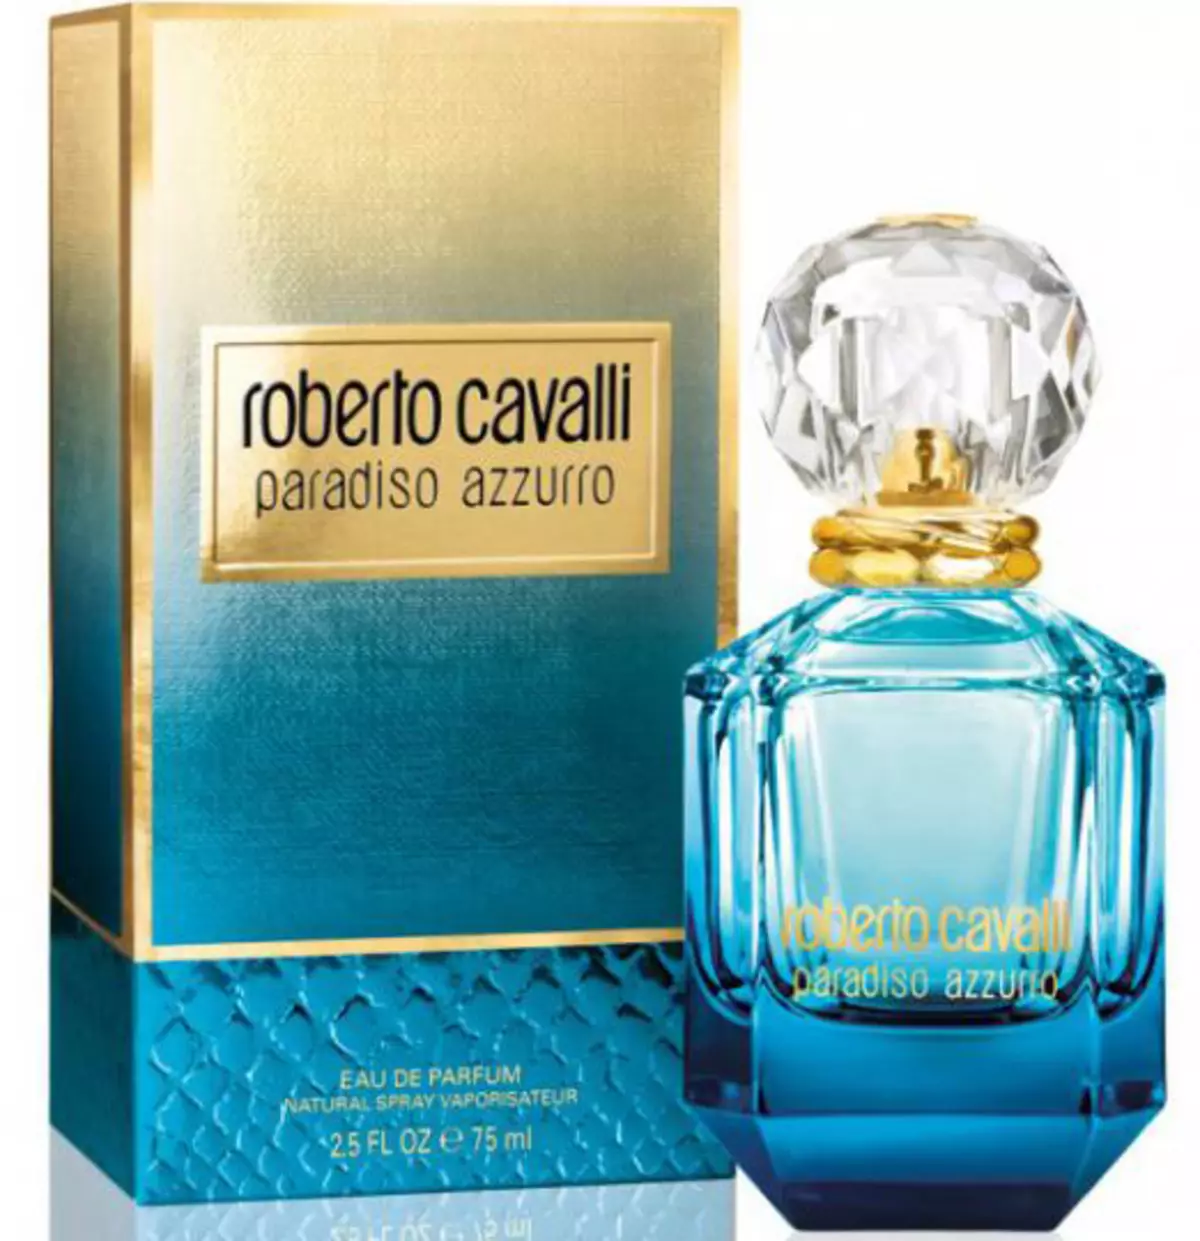 Αρώμα Roberto Cavalli: Άρωμα γυναικών, απλά Cavalli και άλλα νερά τουαλέτας, Aromas Roberto Cavalli Eau de Parfum, Paradiso και Acqua 25296_14